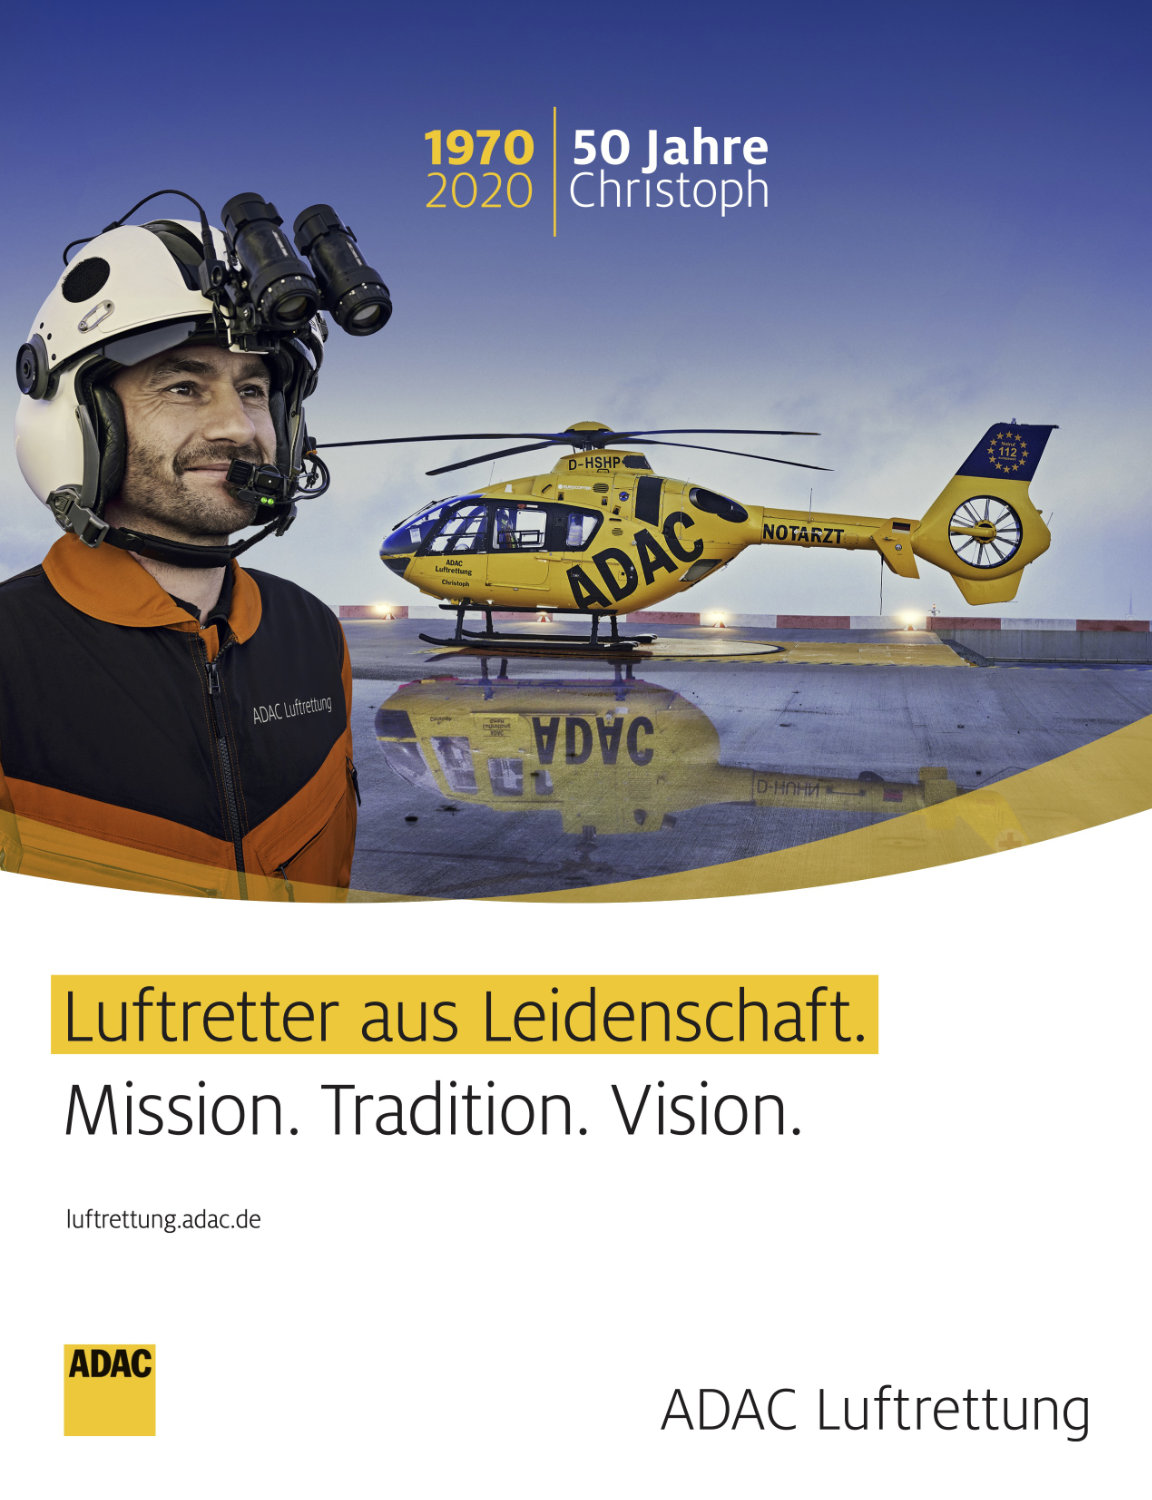 ADAC Luftrettung Anzeige zum 50 Jahre Christoph Jubiläum 